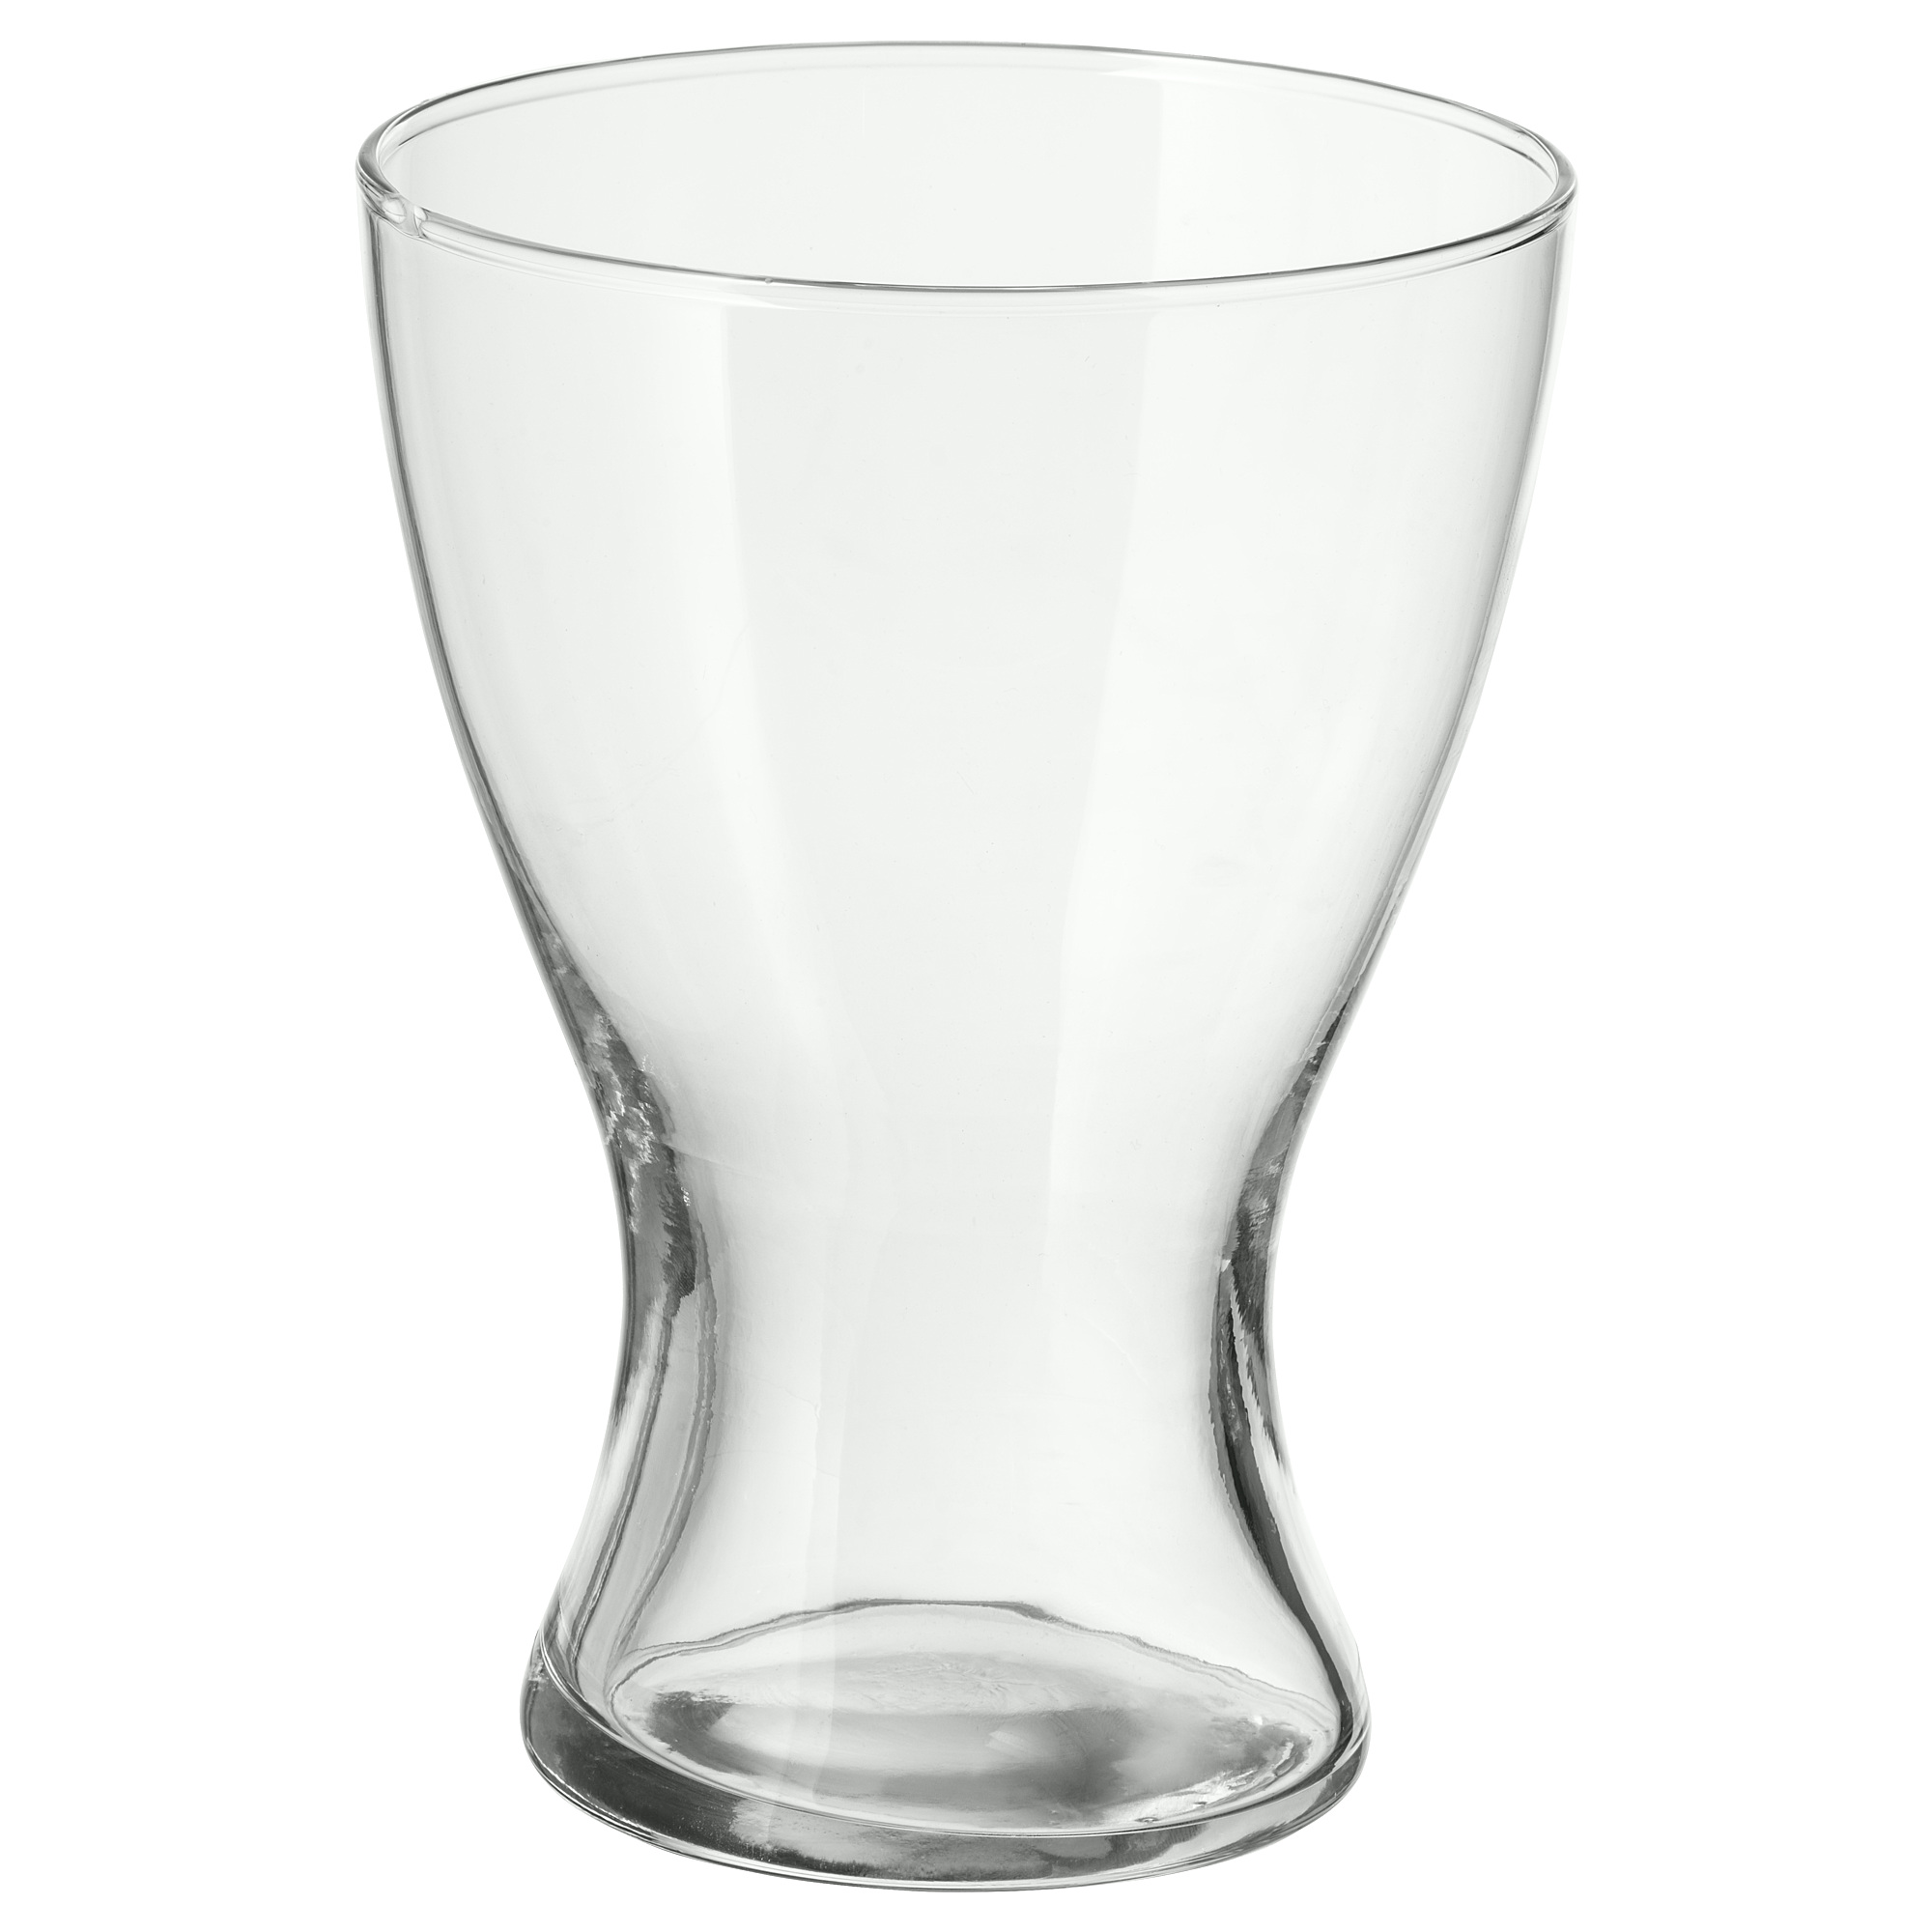 Vasen 花瓶 透明玻璃 Ikea 線上購物